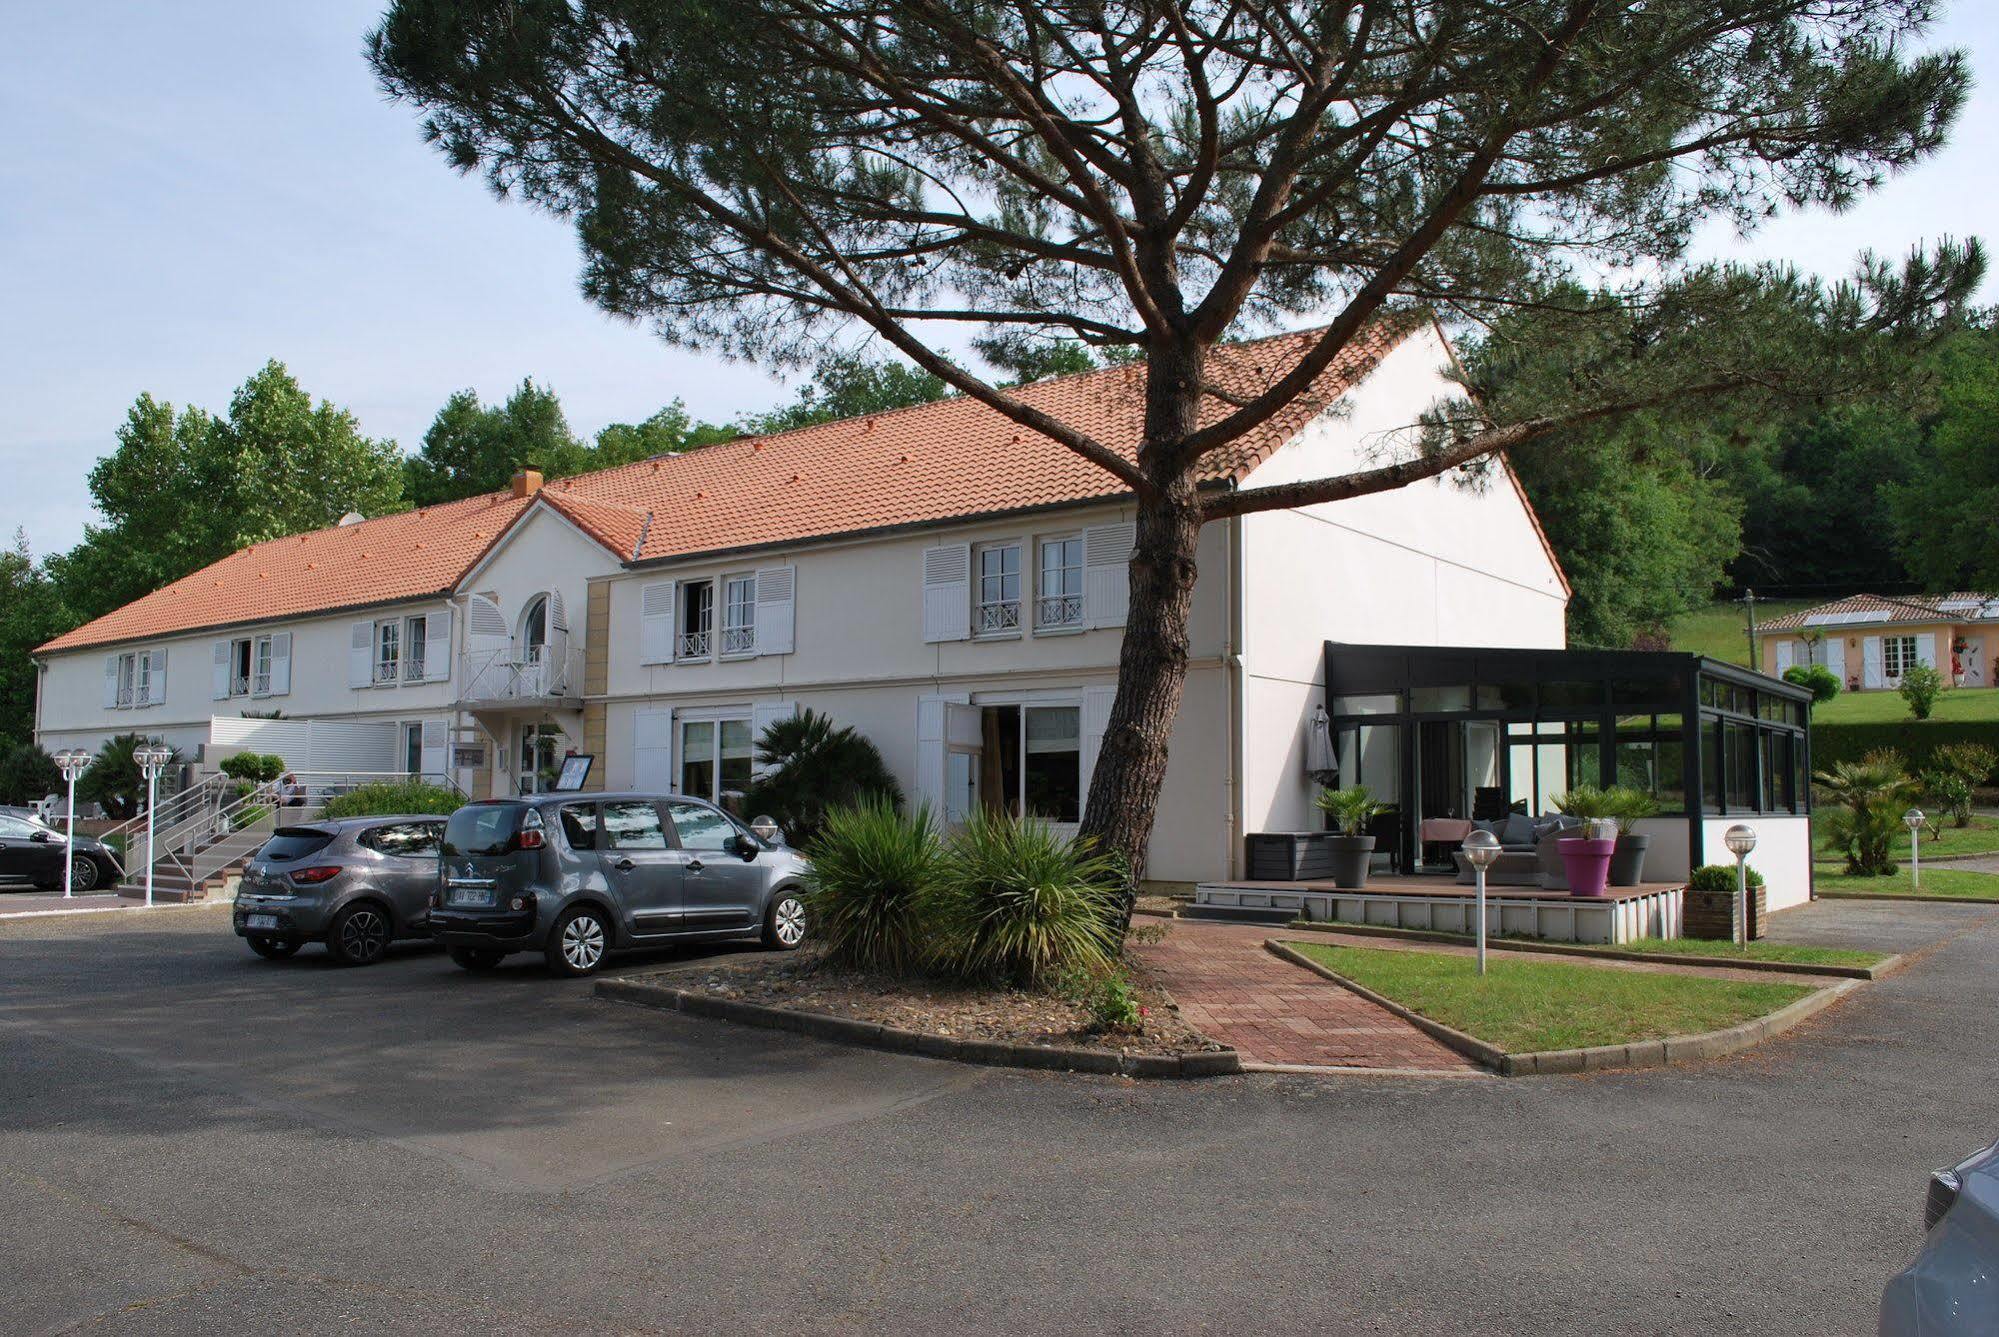 Hotel Le Relais Des Champs Eugenie-les-Bains Exterior photo